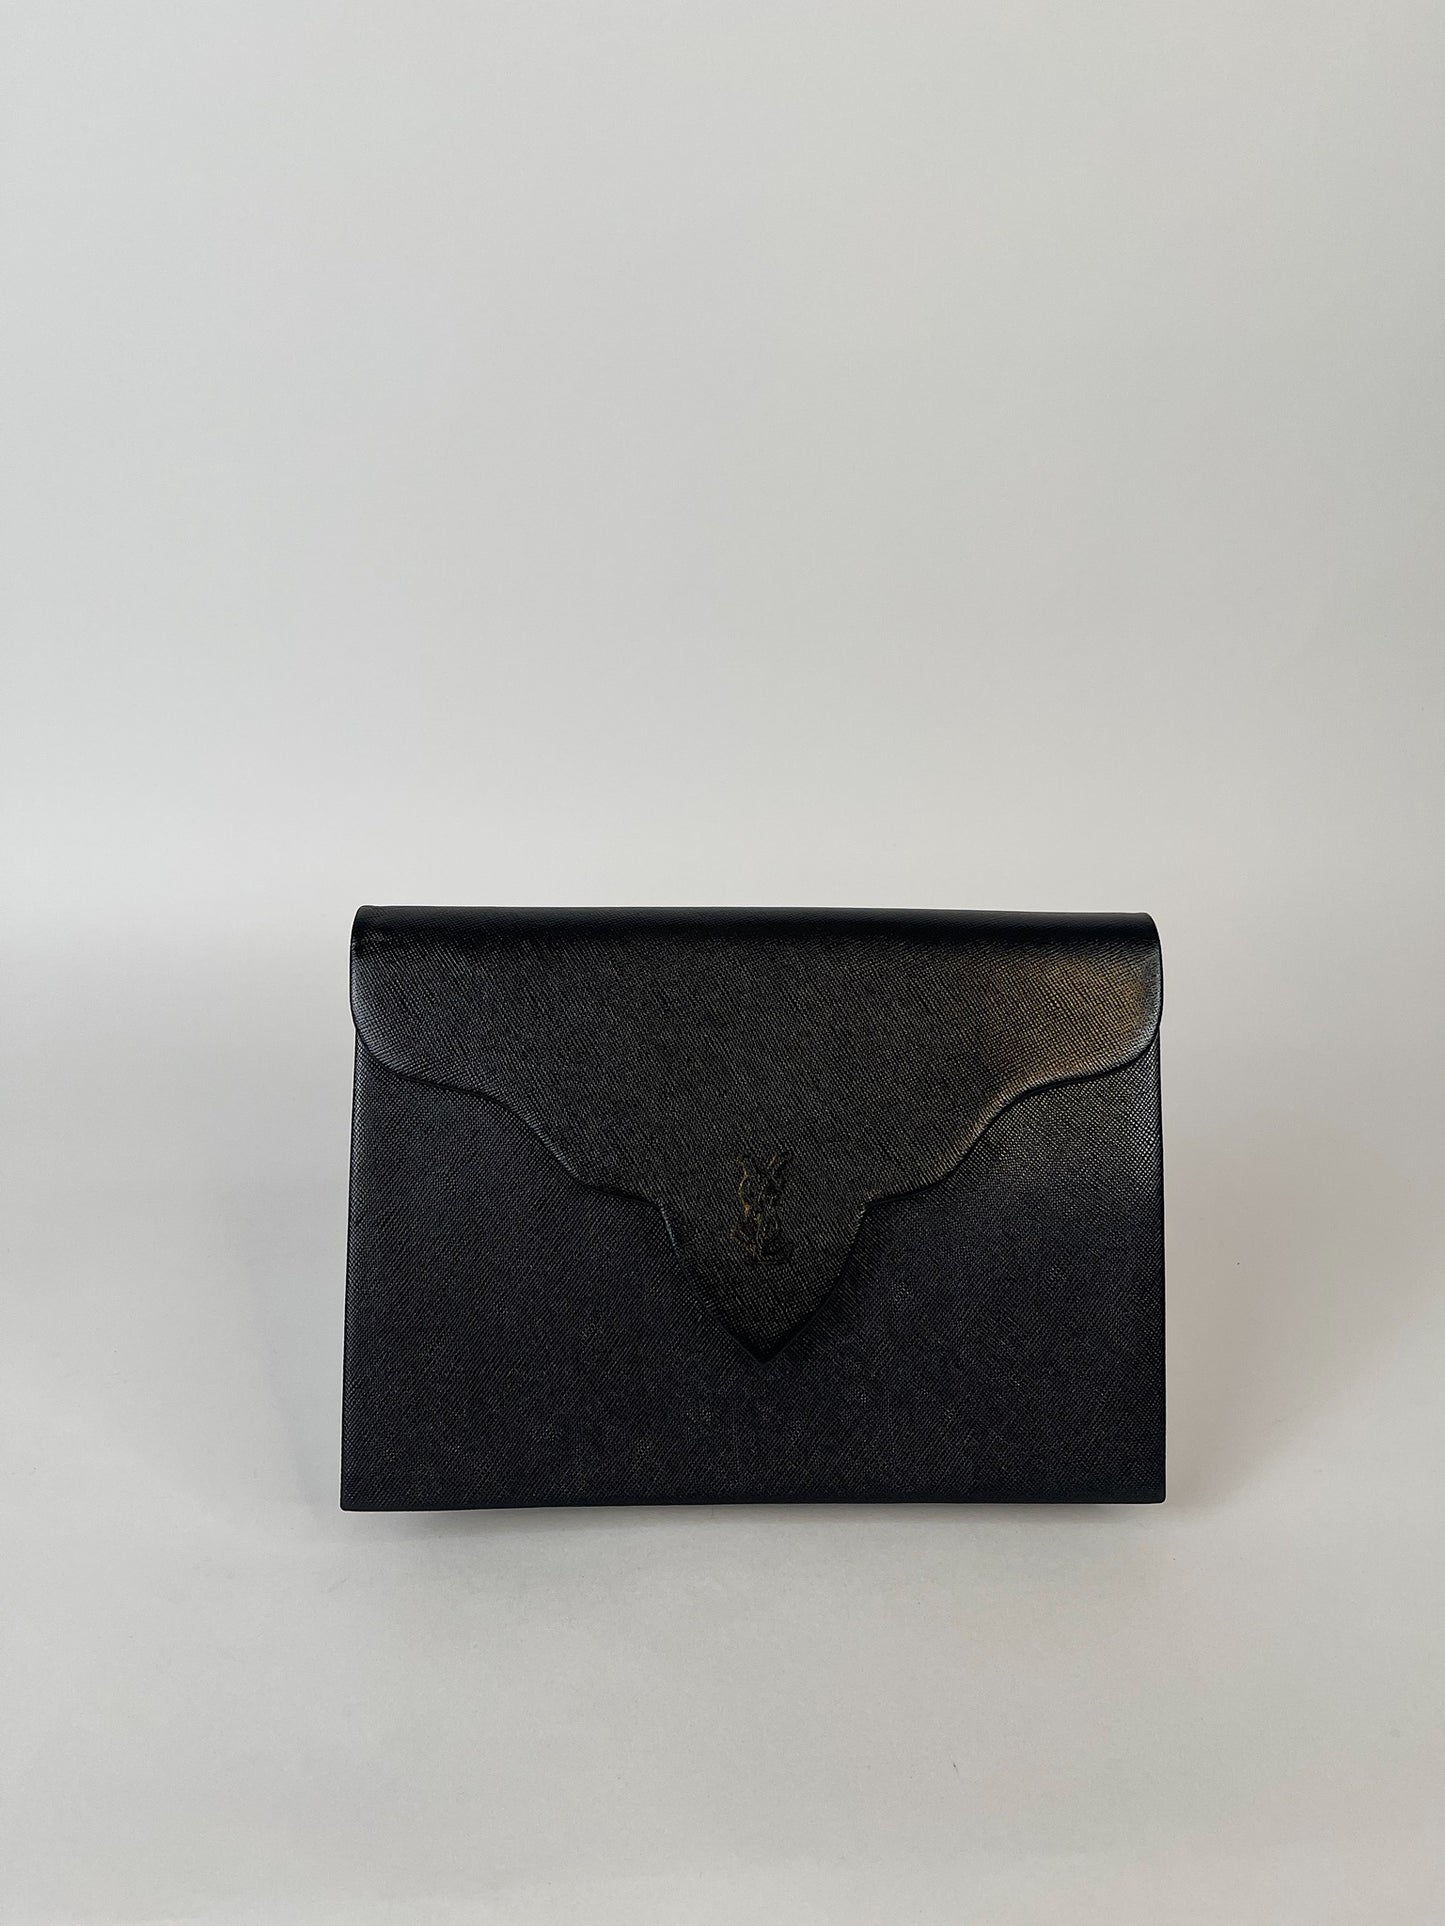 Yves Saint Laurent Black Saffiano Flap Clutch Bag